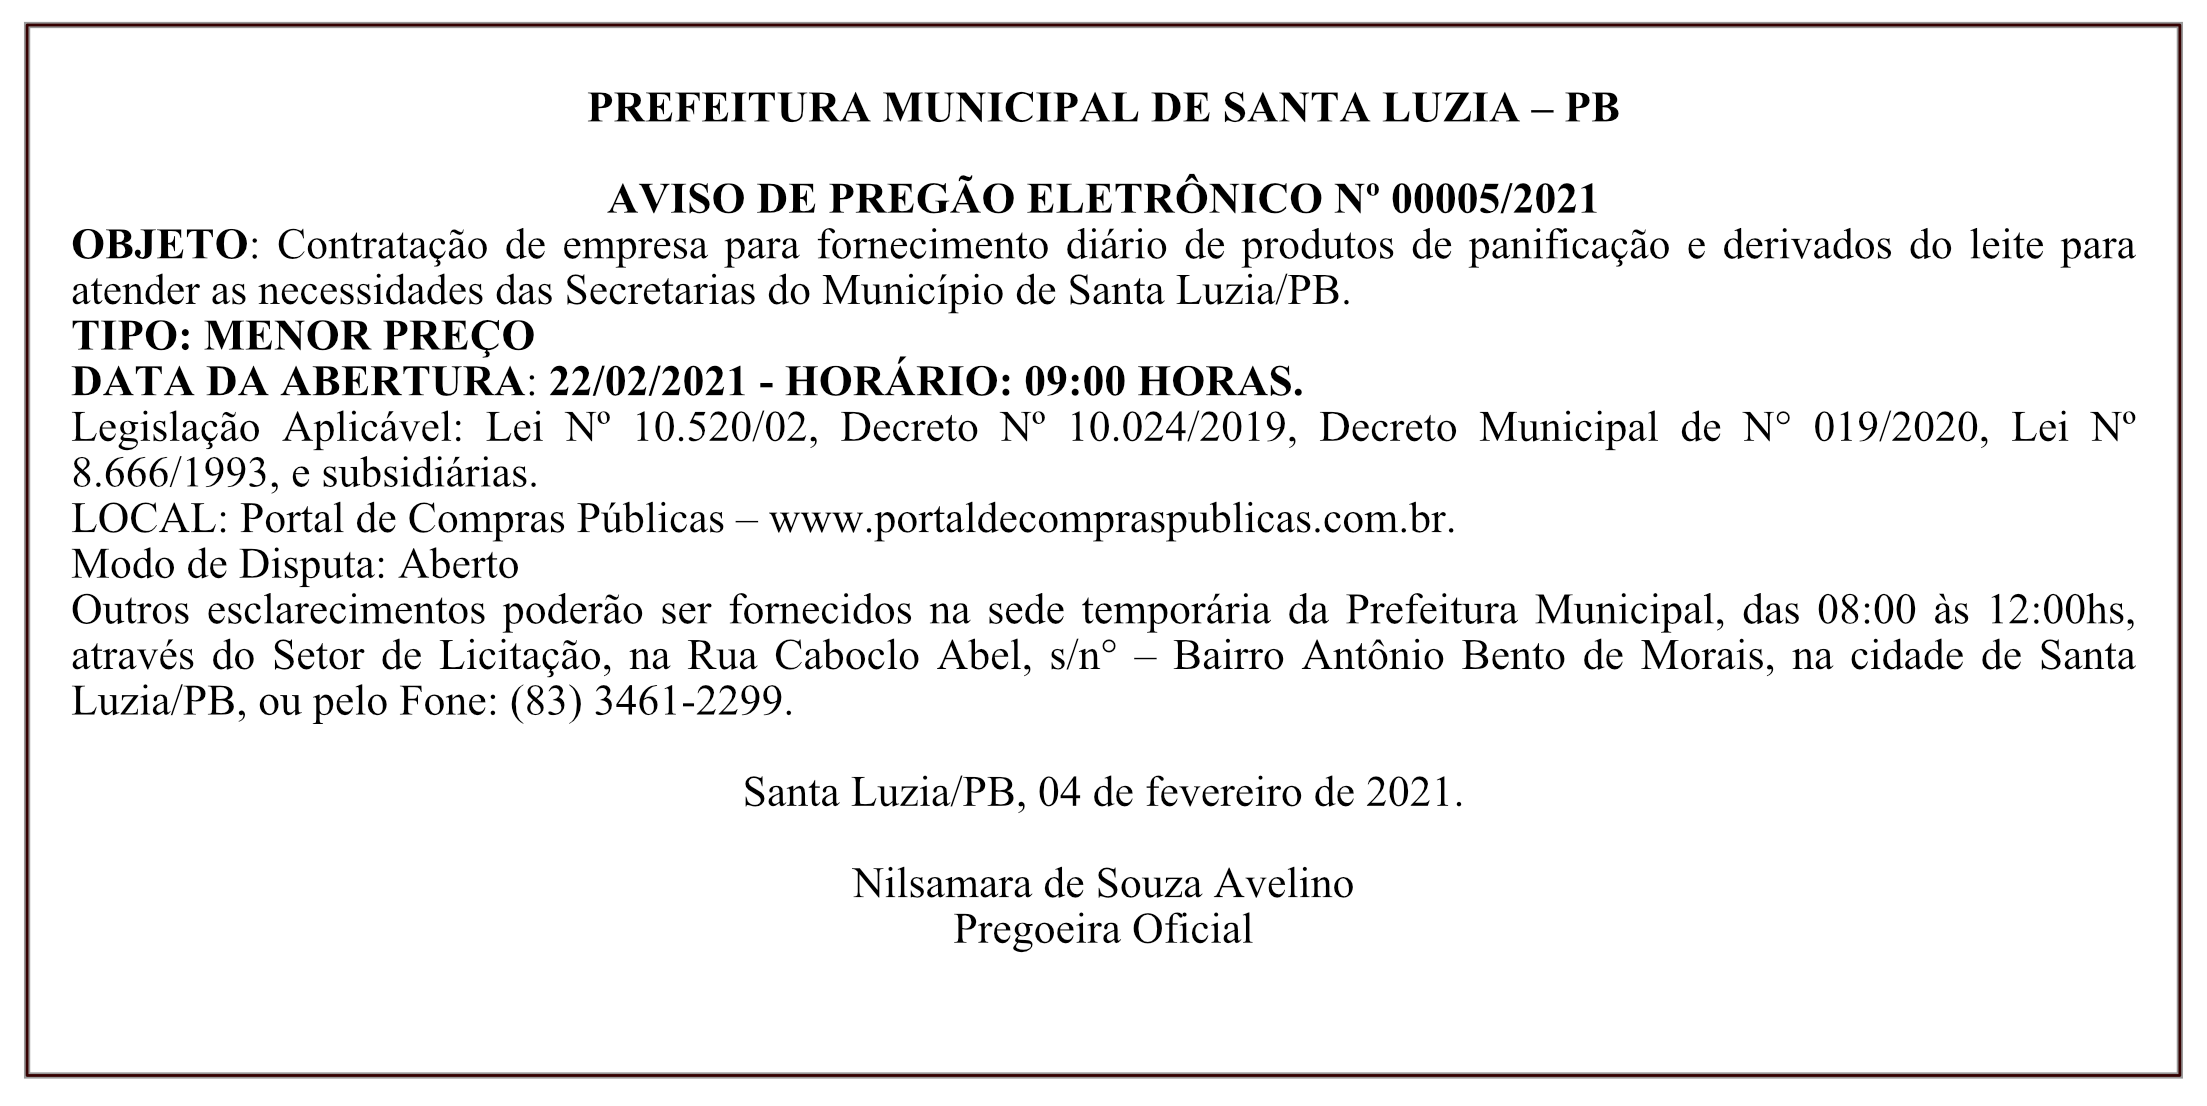 PREFEITURA MUNICIPAL DE SANTA LUZIA – AVISO DE PREGÃO ELETRÔNICO Nº 00005/2021